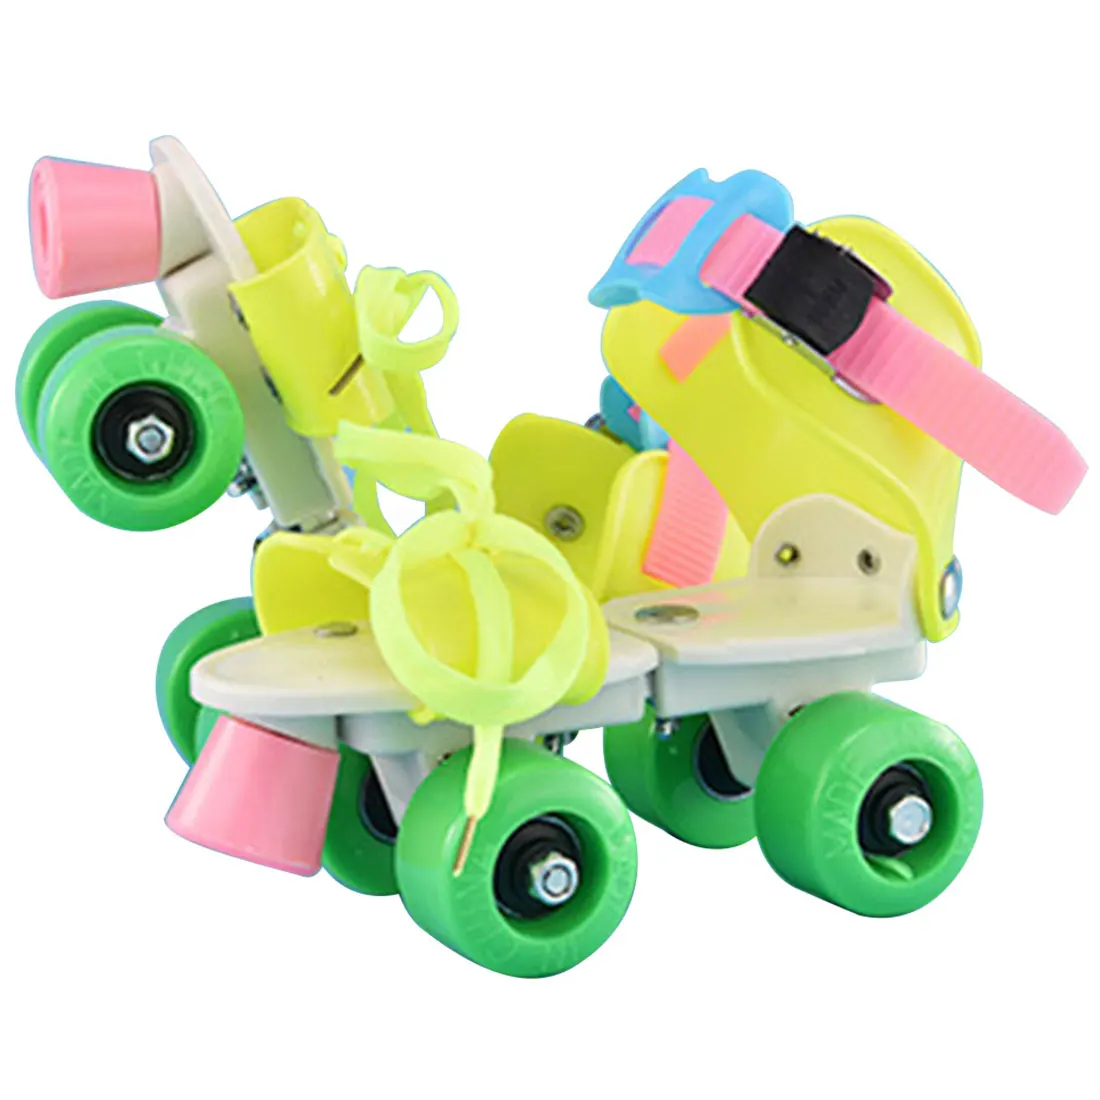 Новые детские роликовые коньки двухрядные 4 колёса Регулируемый размеры катание обувь раздвижные слалом роликовые коньки детские подарки